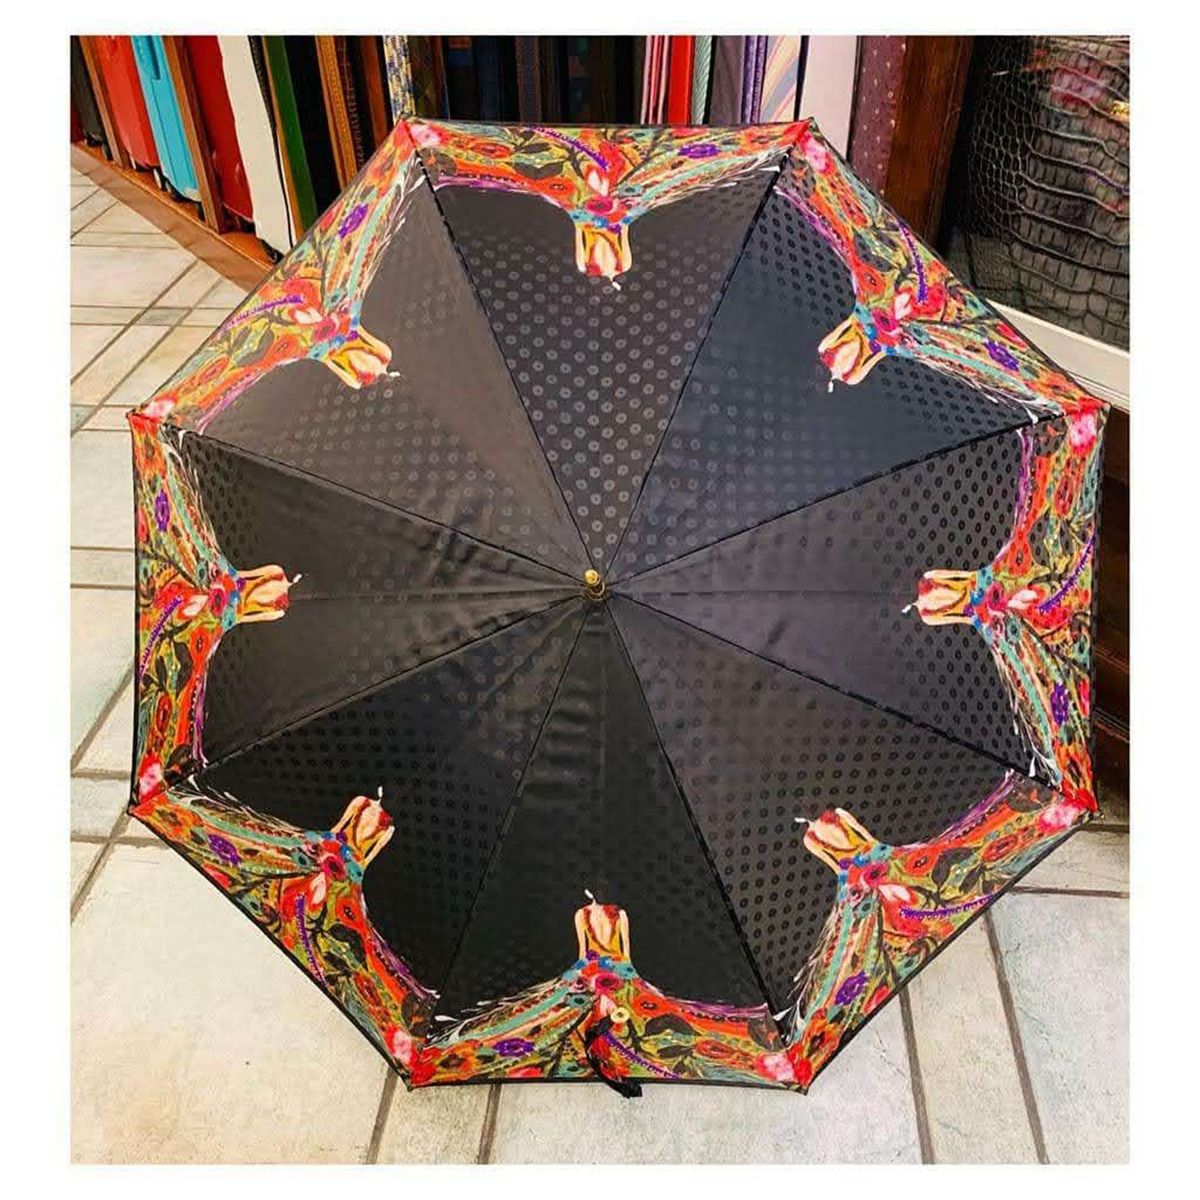 Tienda de paraguas en Logroño